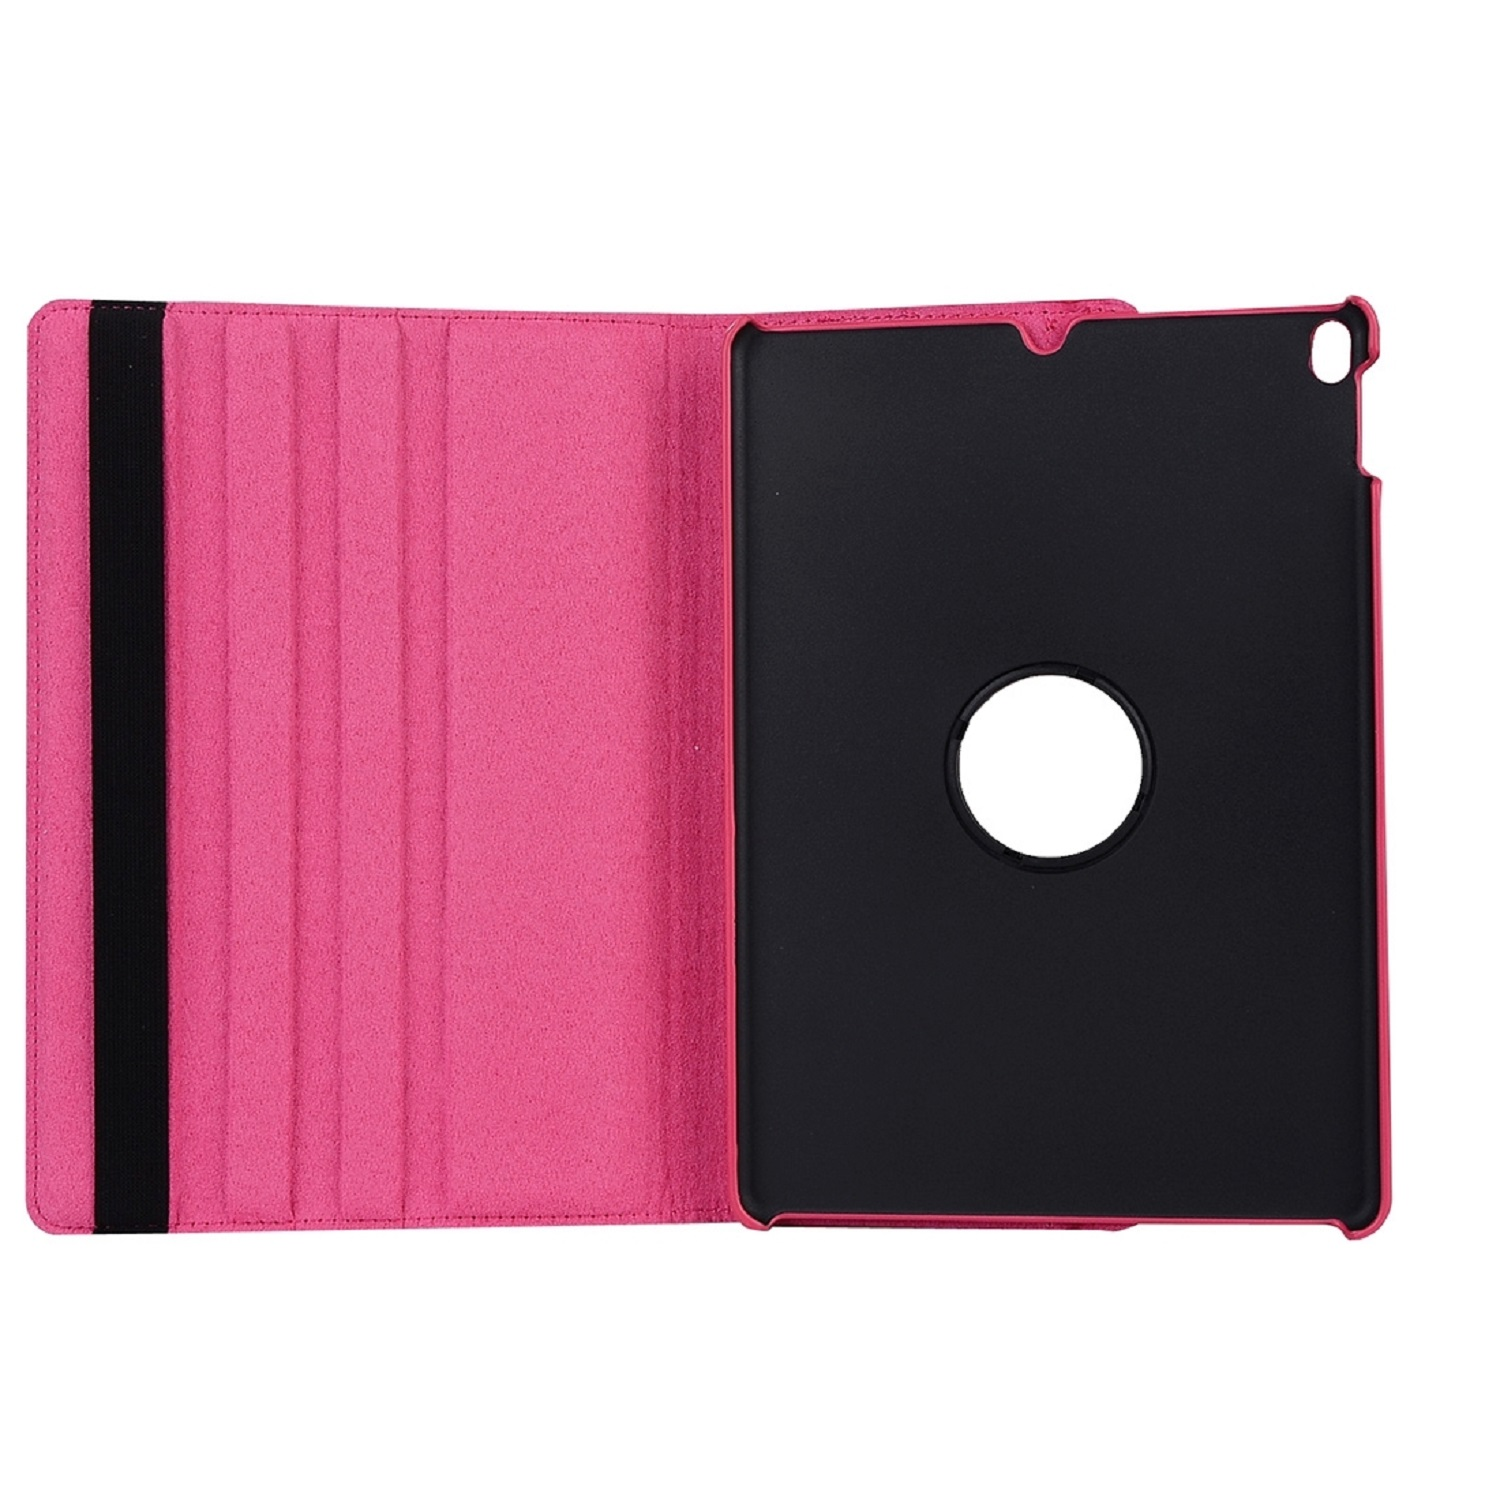 Full Apple drehbar Rose Tablethülle Case Schutzhülle Cover 360 Robustes Grad PROTECTORKING für Kunstleder/ TPU, Rotation Bookcover